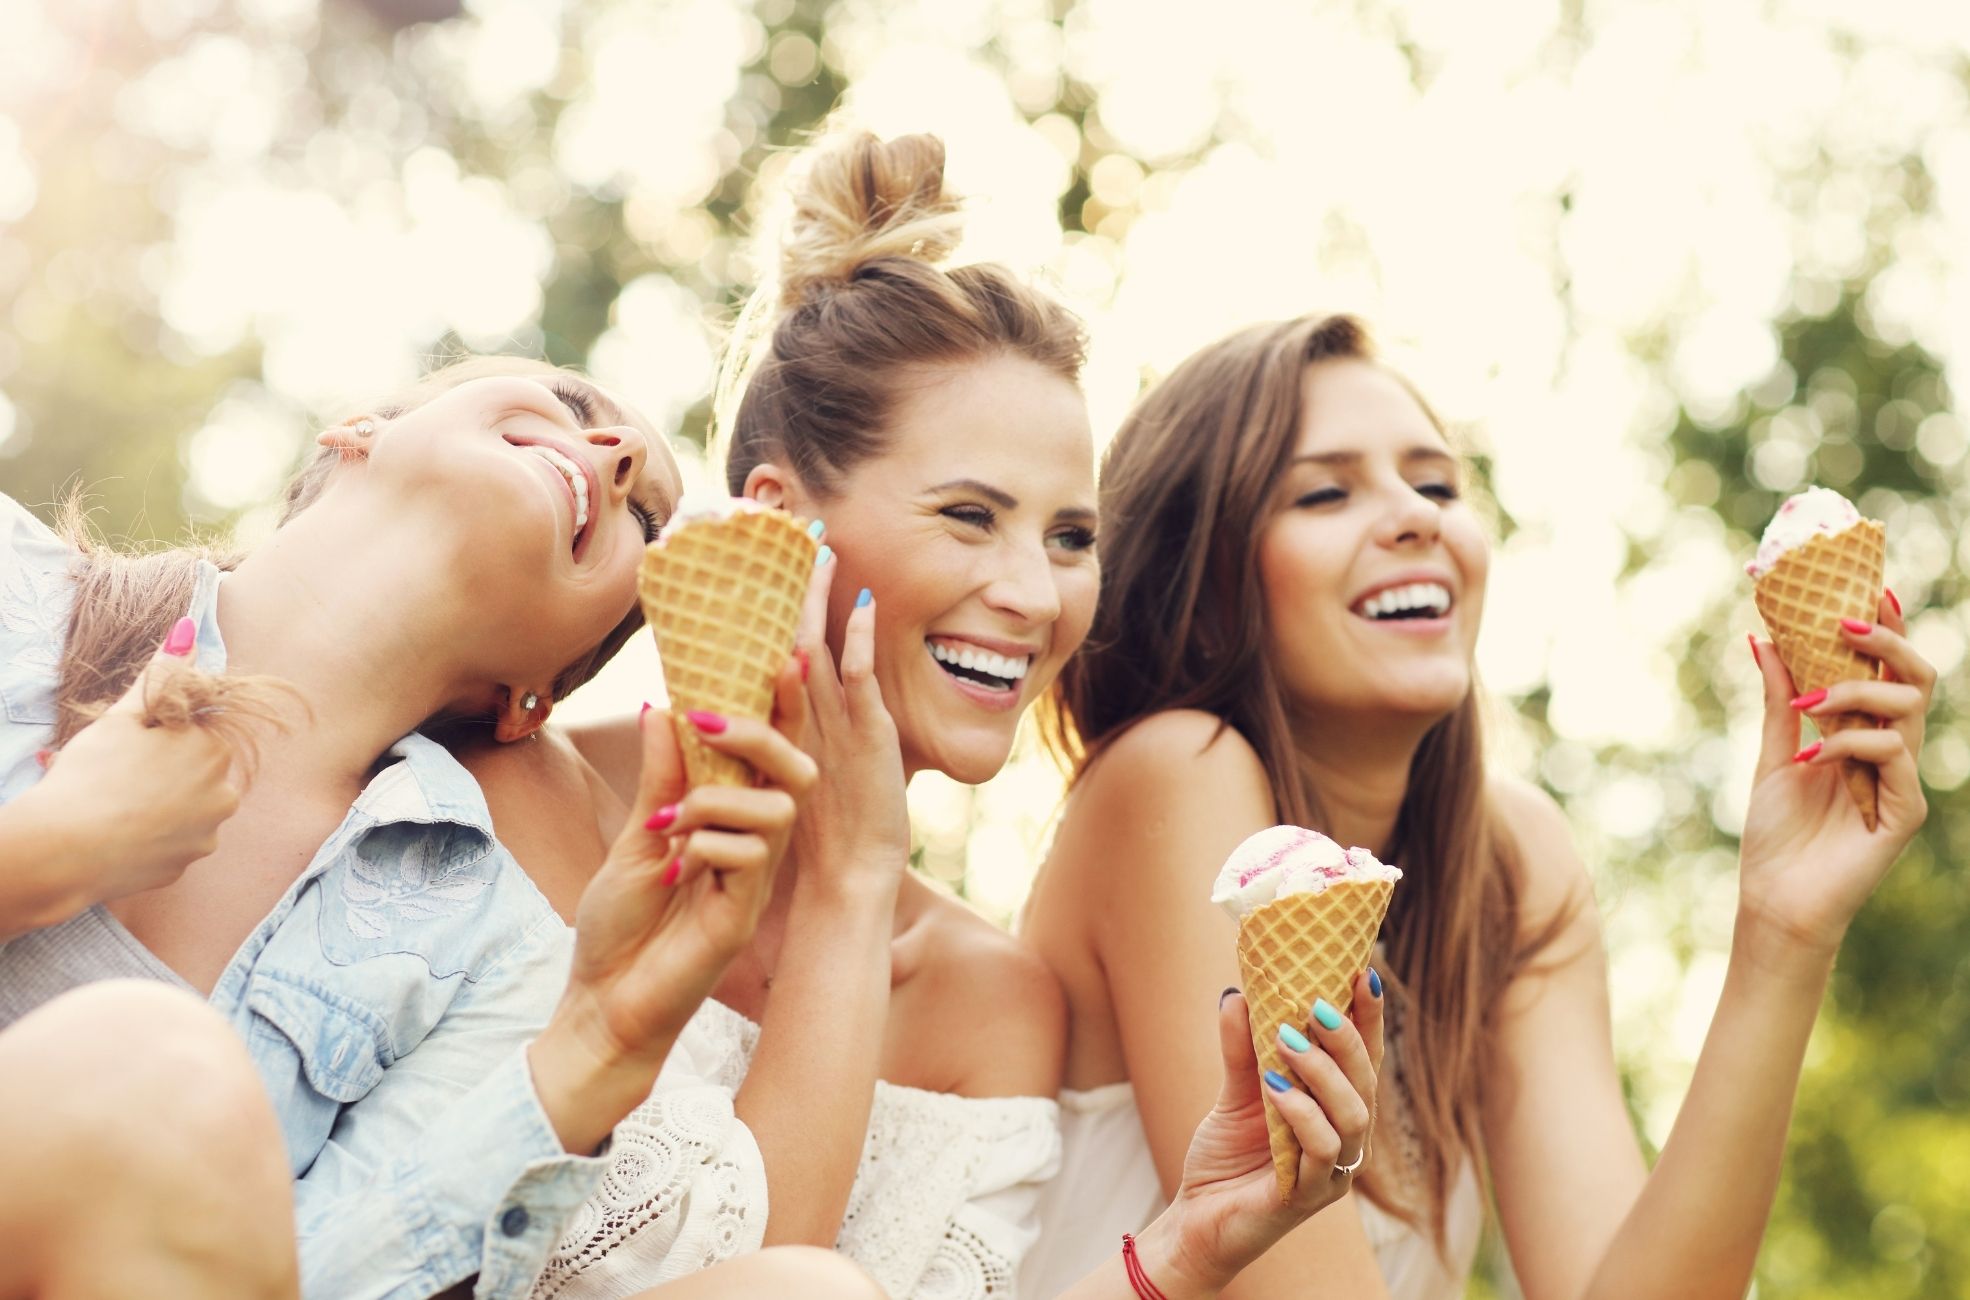 Women With Ice Cream